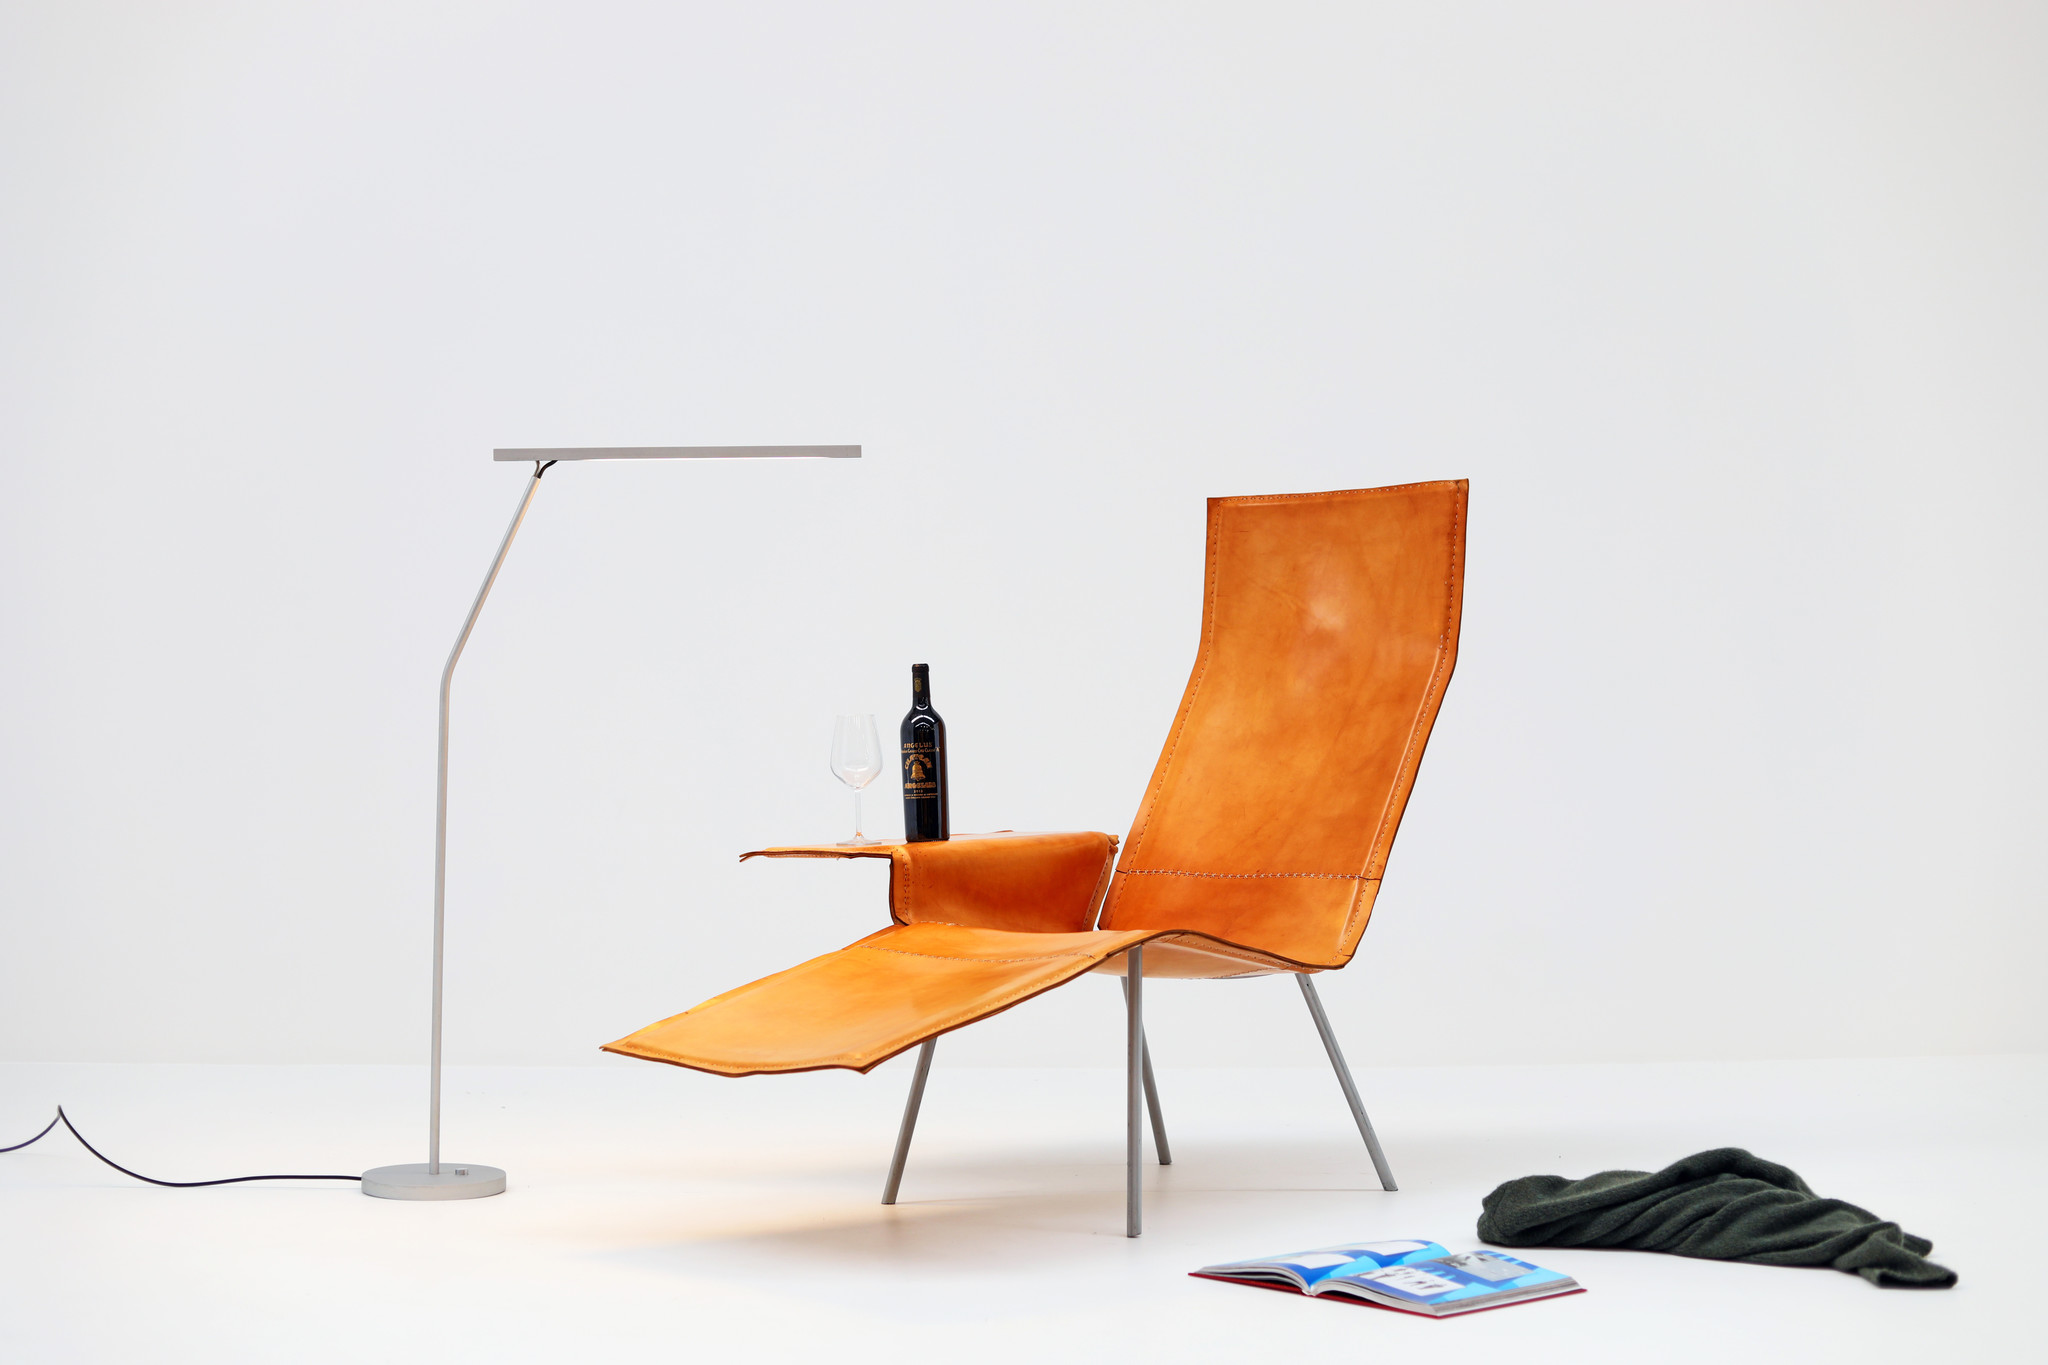 Prototype Maarten Van Severen Lounge chair by Pastoe, 2004